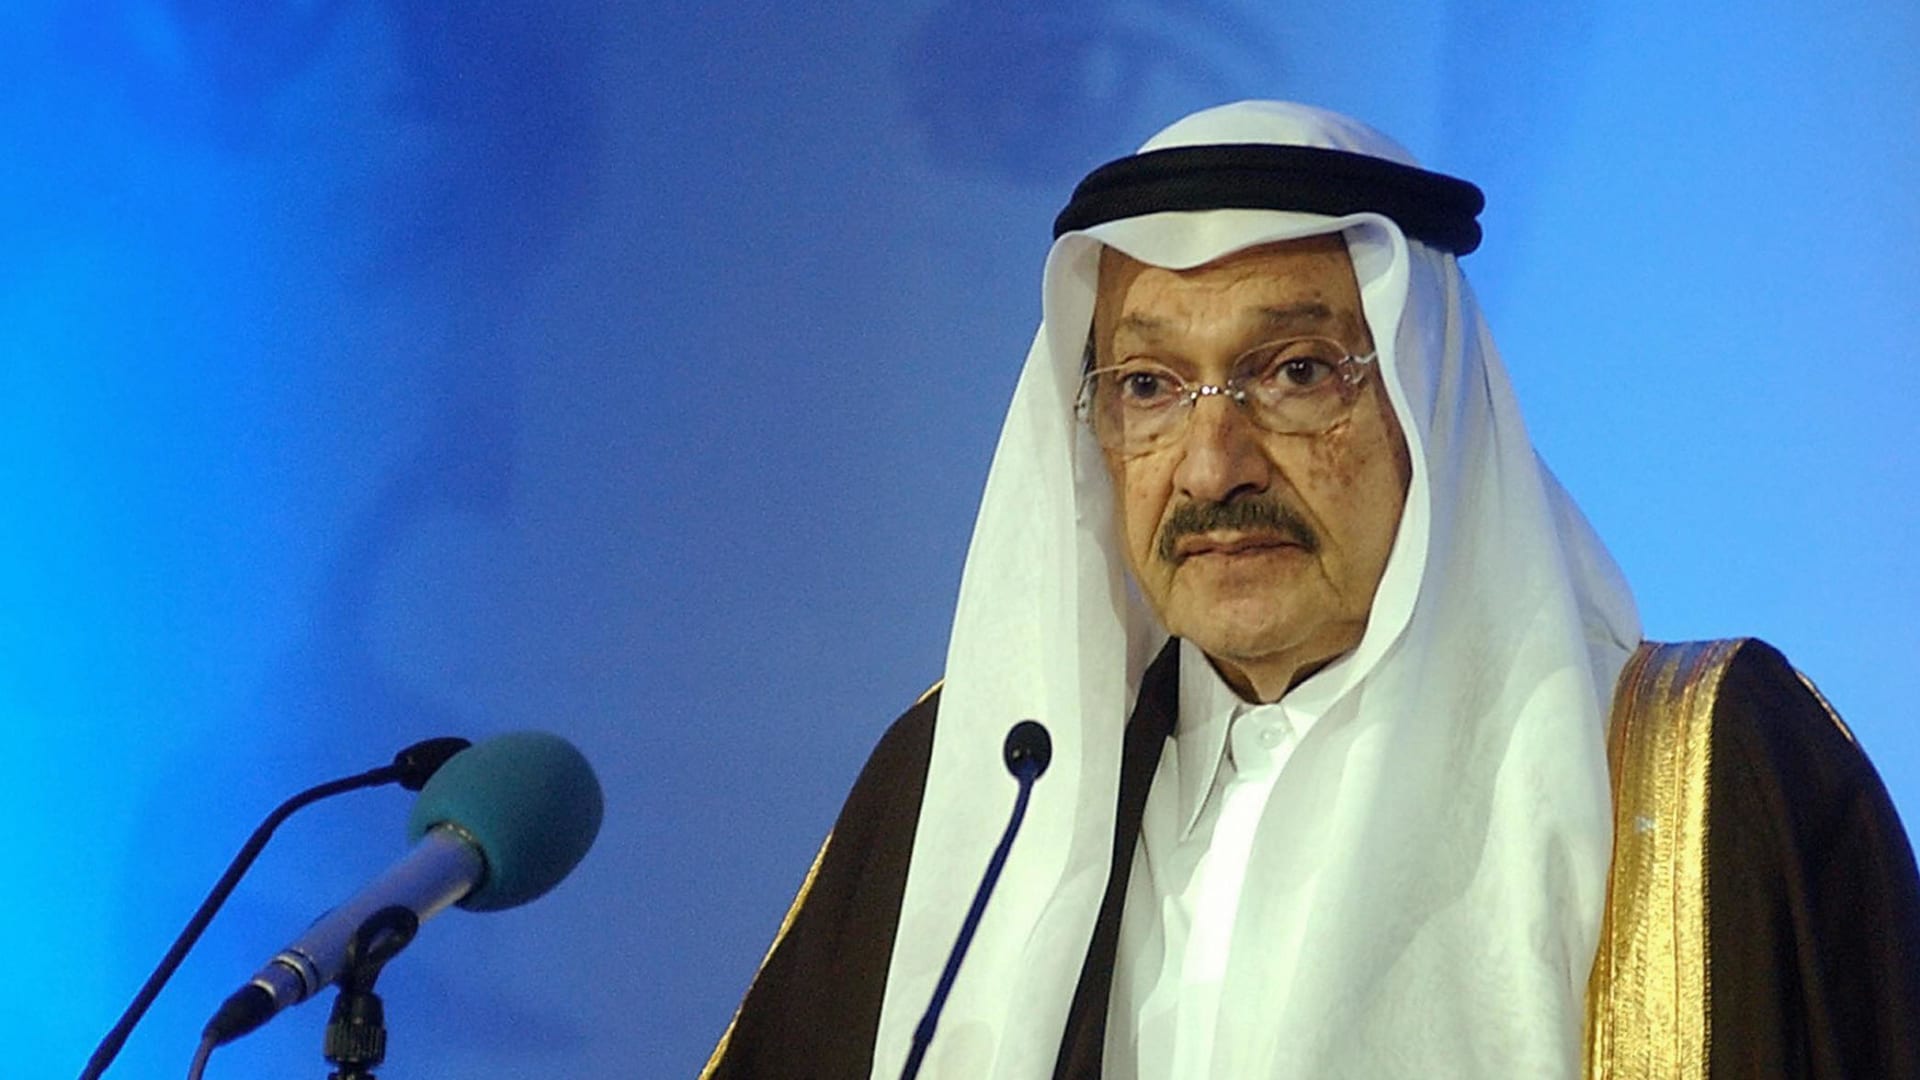 ما هو مرض صاحب السمو الأمير طلال بن فهد آل سعود